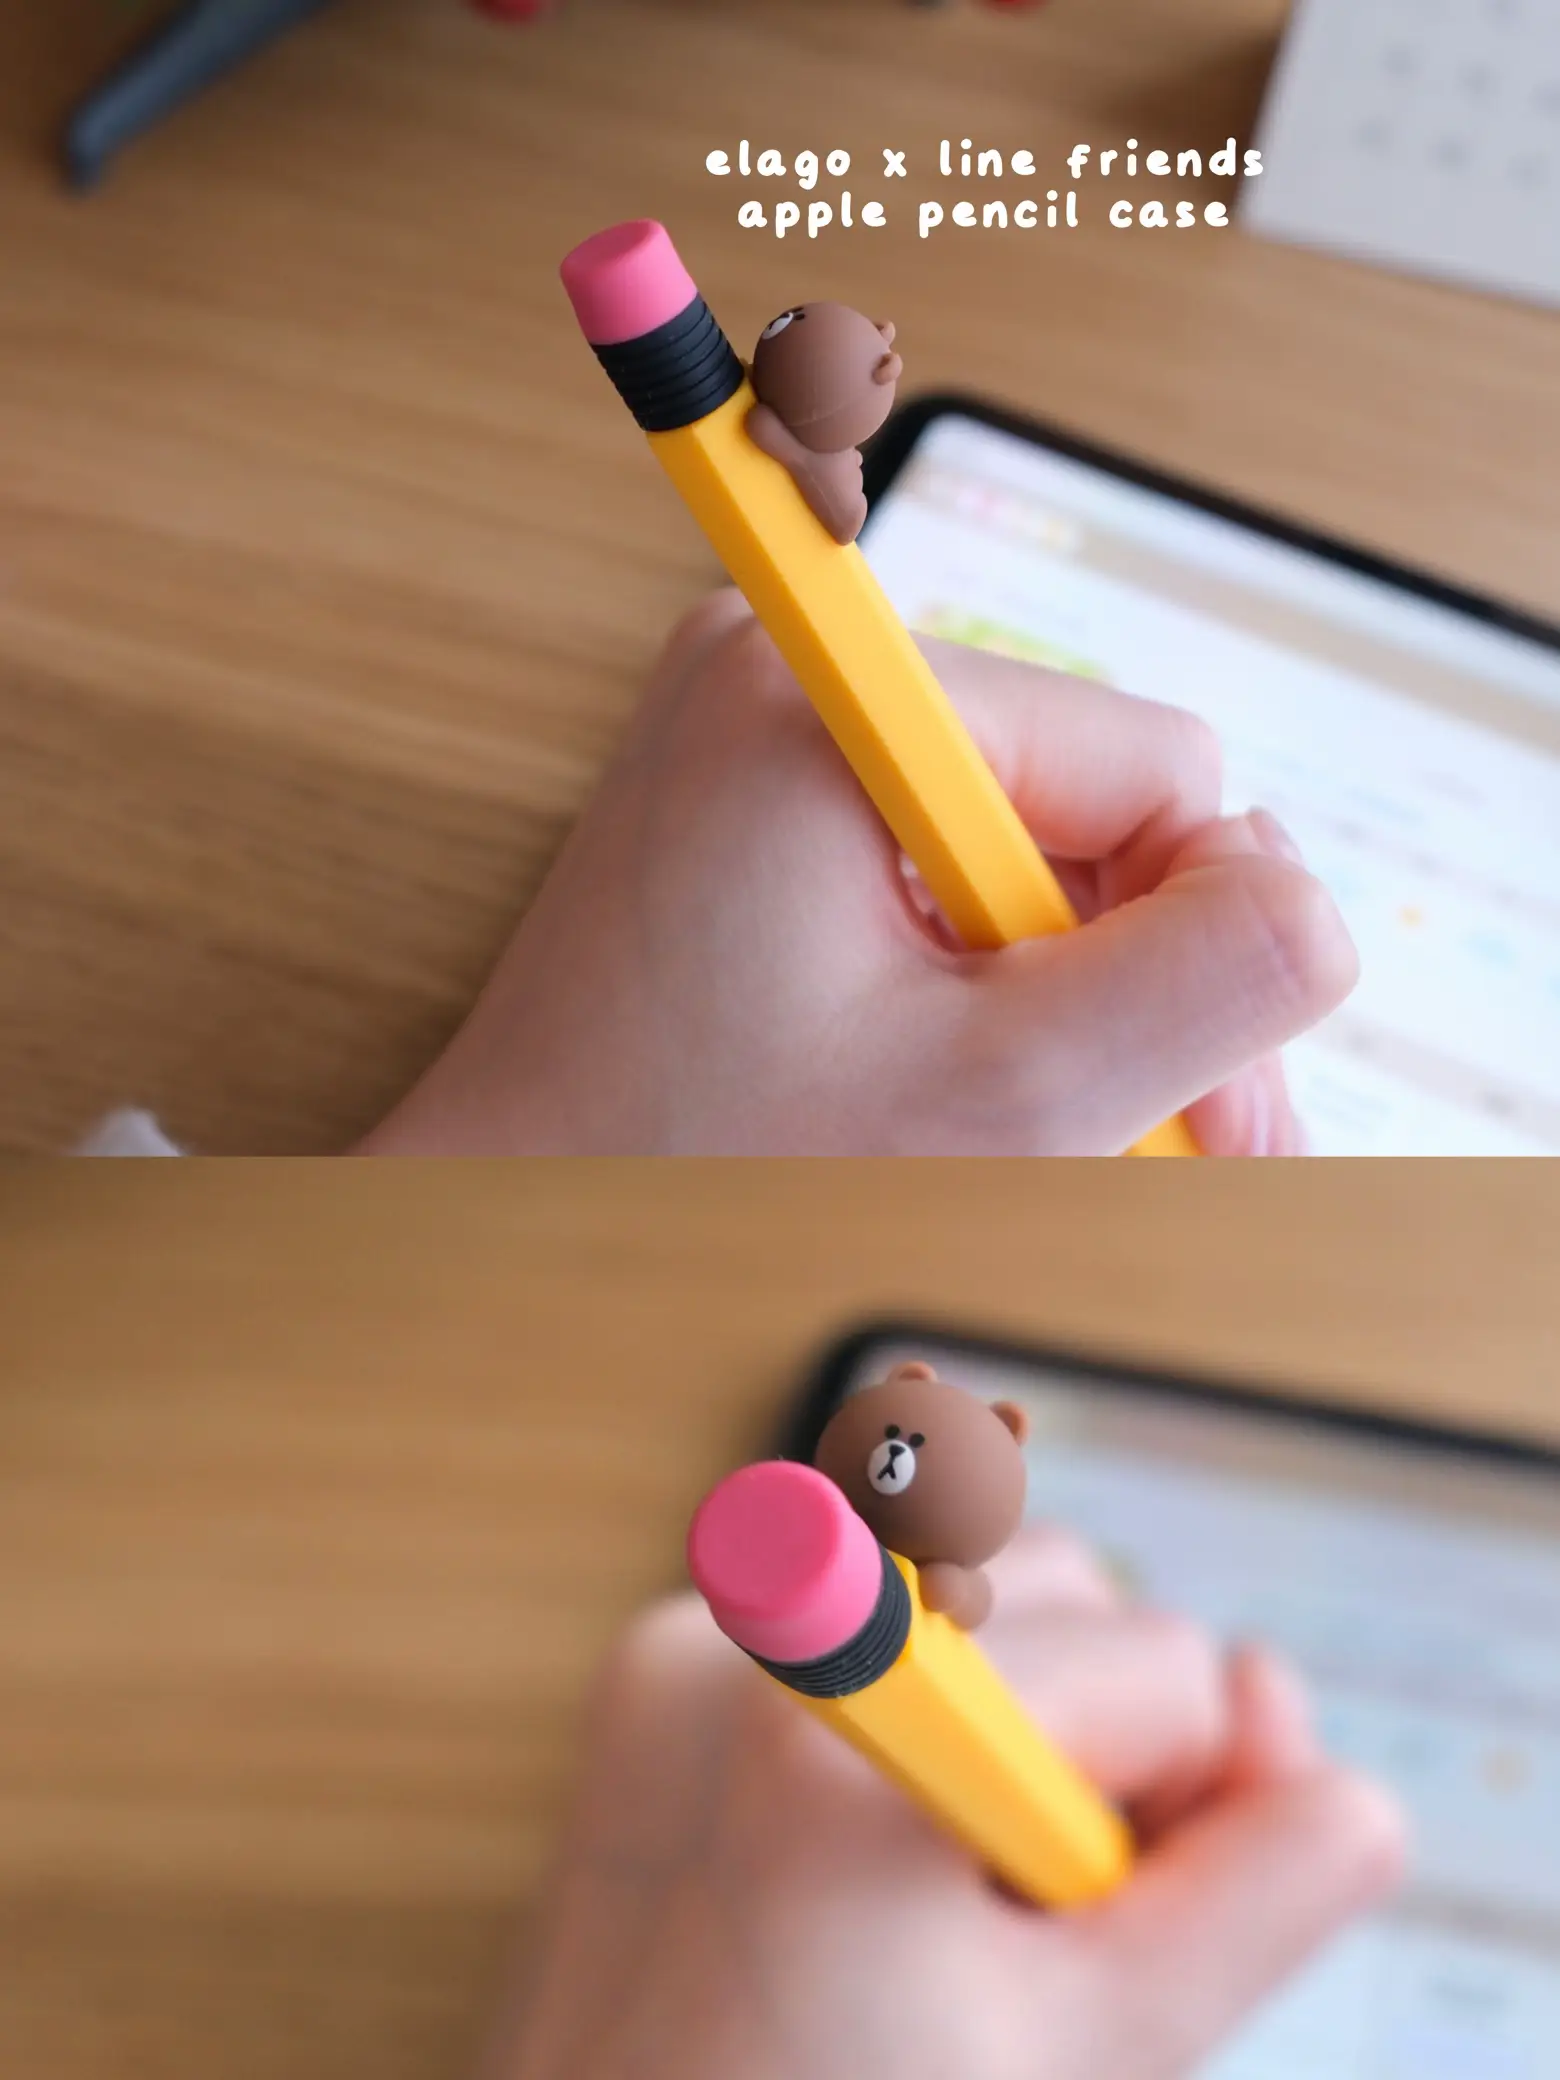 FJK MUJI Gel Ink Ballpoint Pens [0.5mm] 9-colors Pack